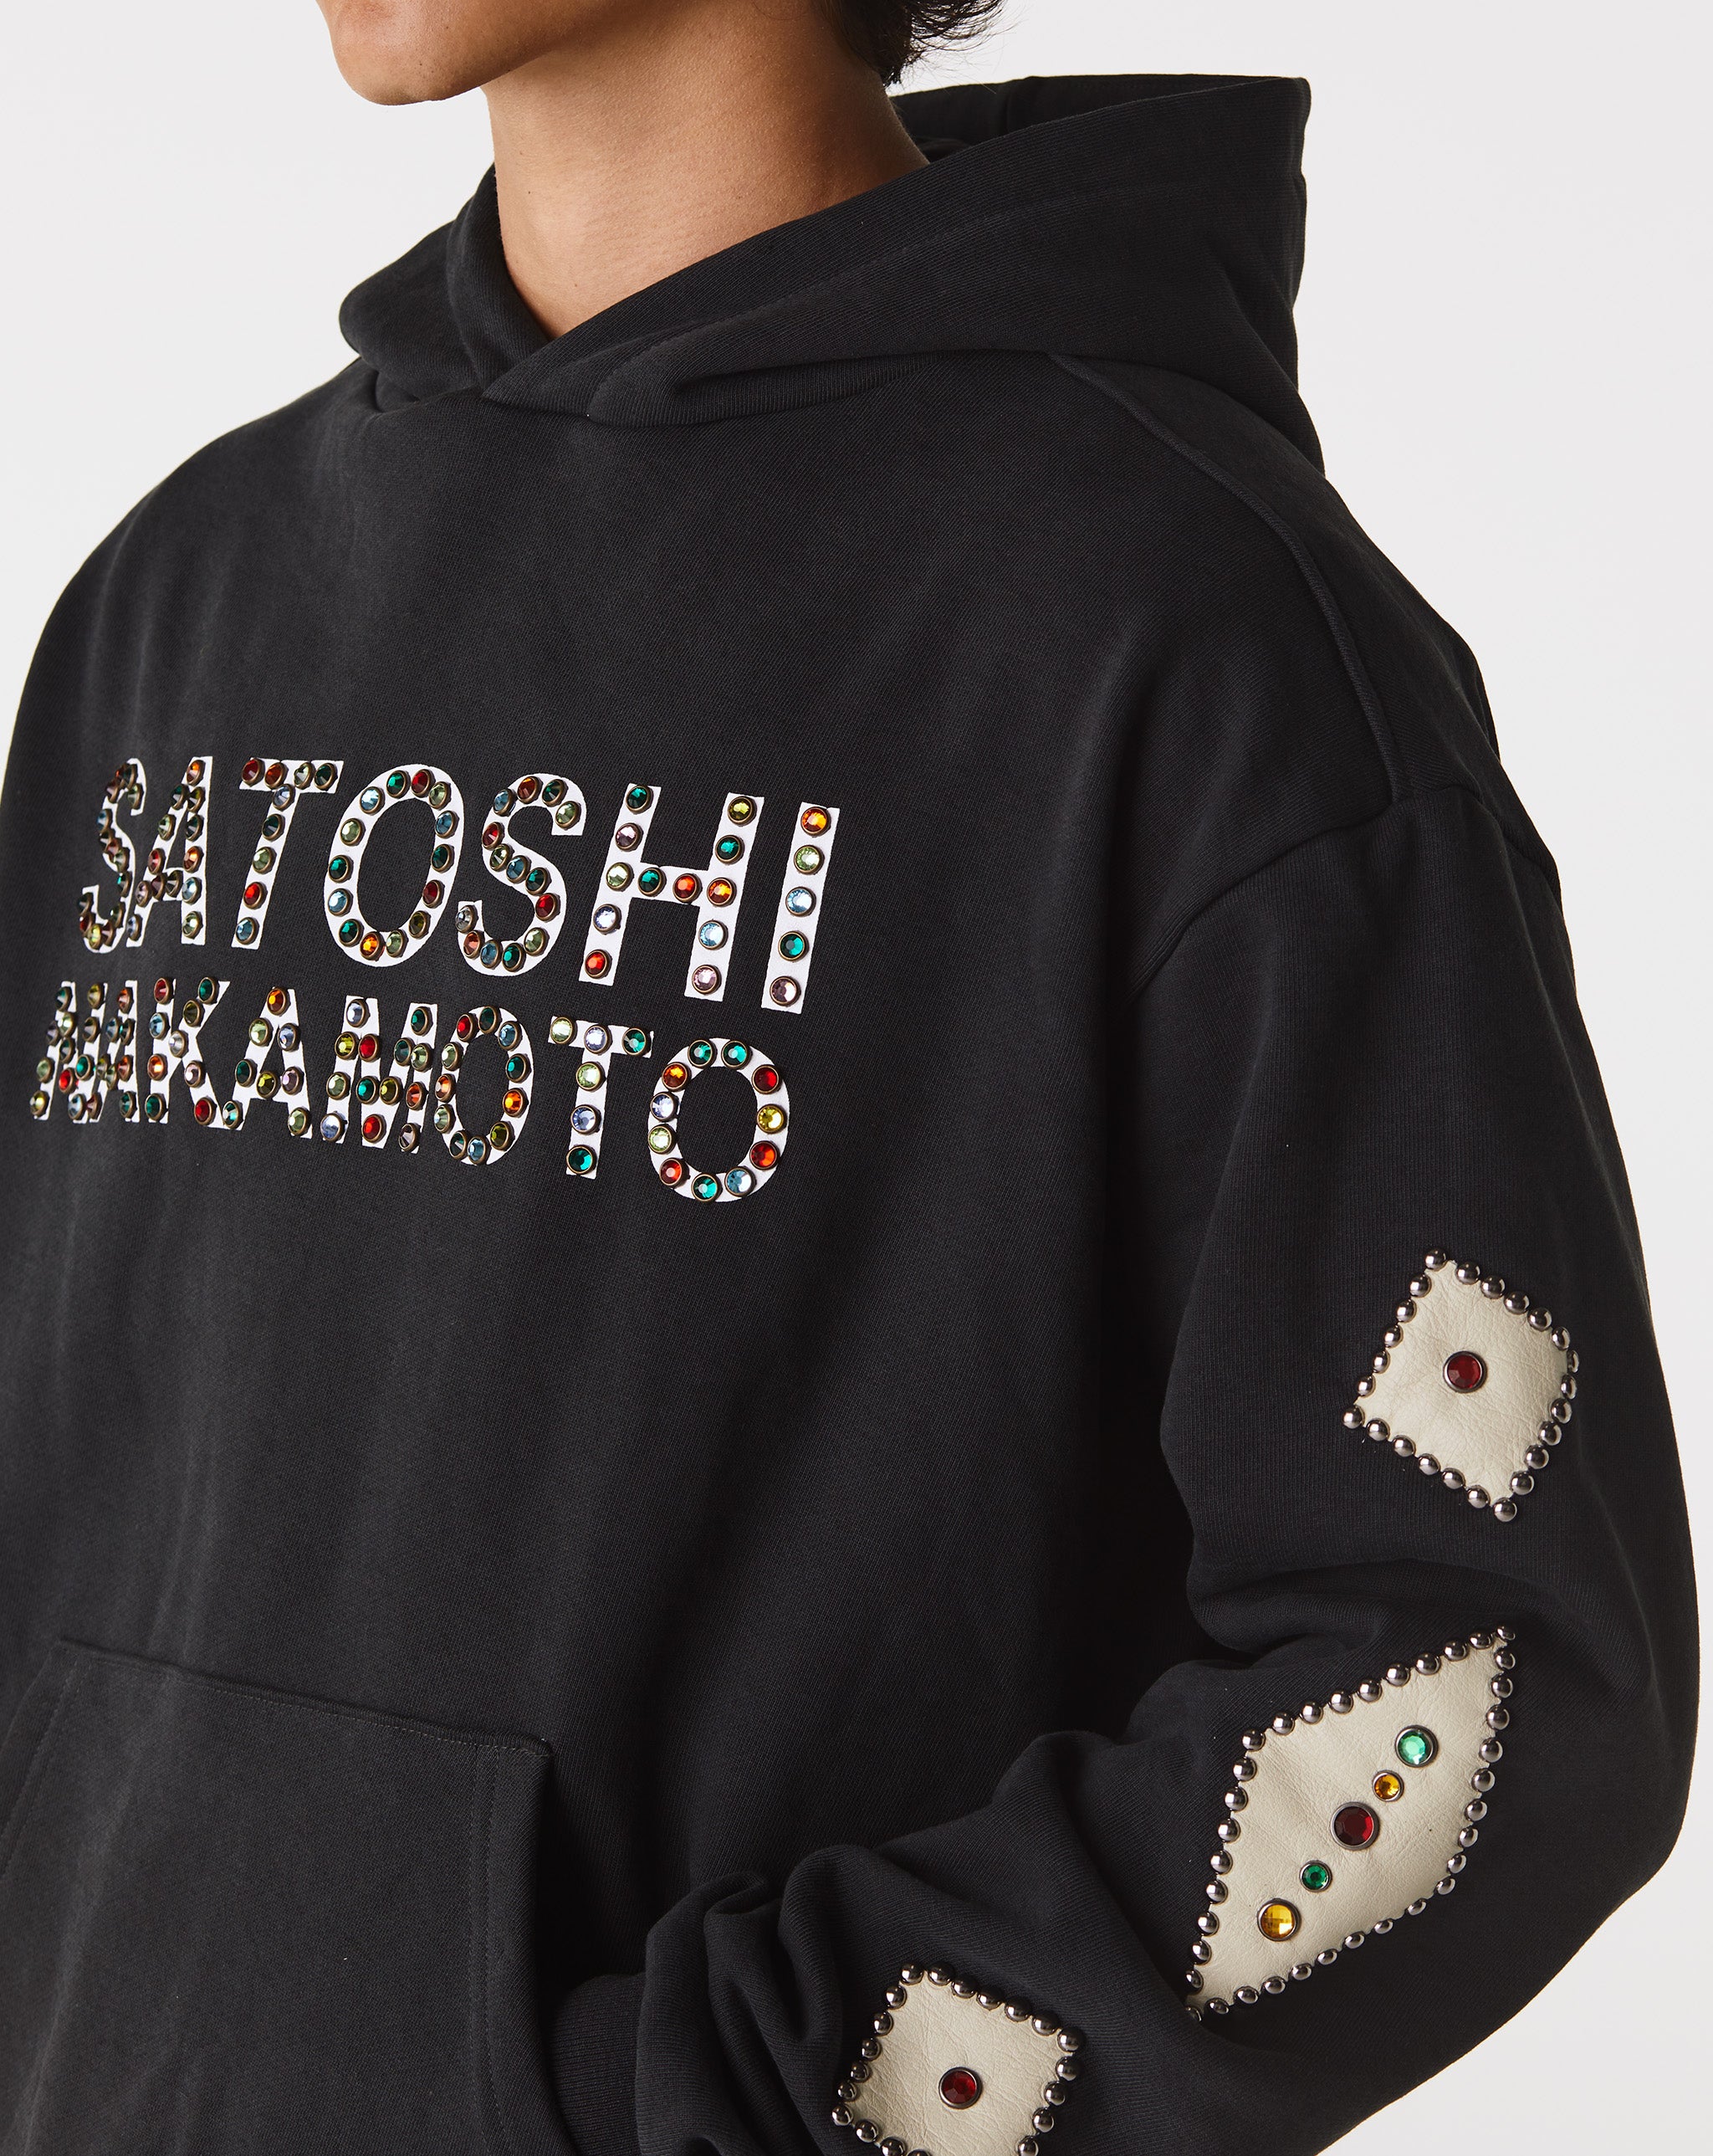 Satoshi Nakamoto Leather Studded Logo Hoodie  - XHIBITION